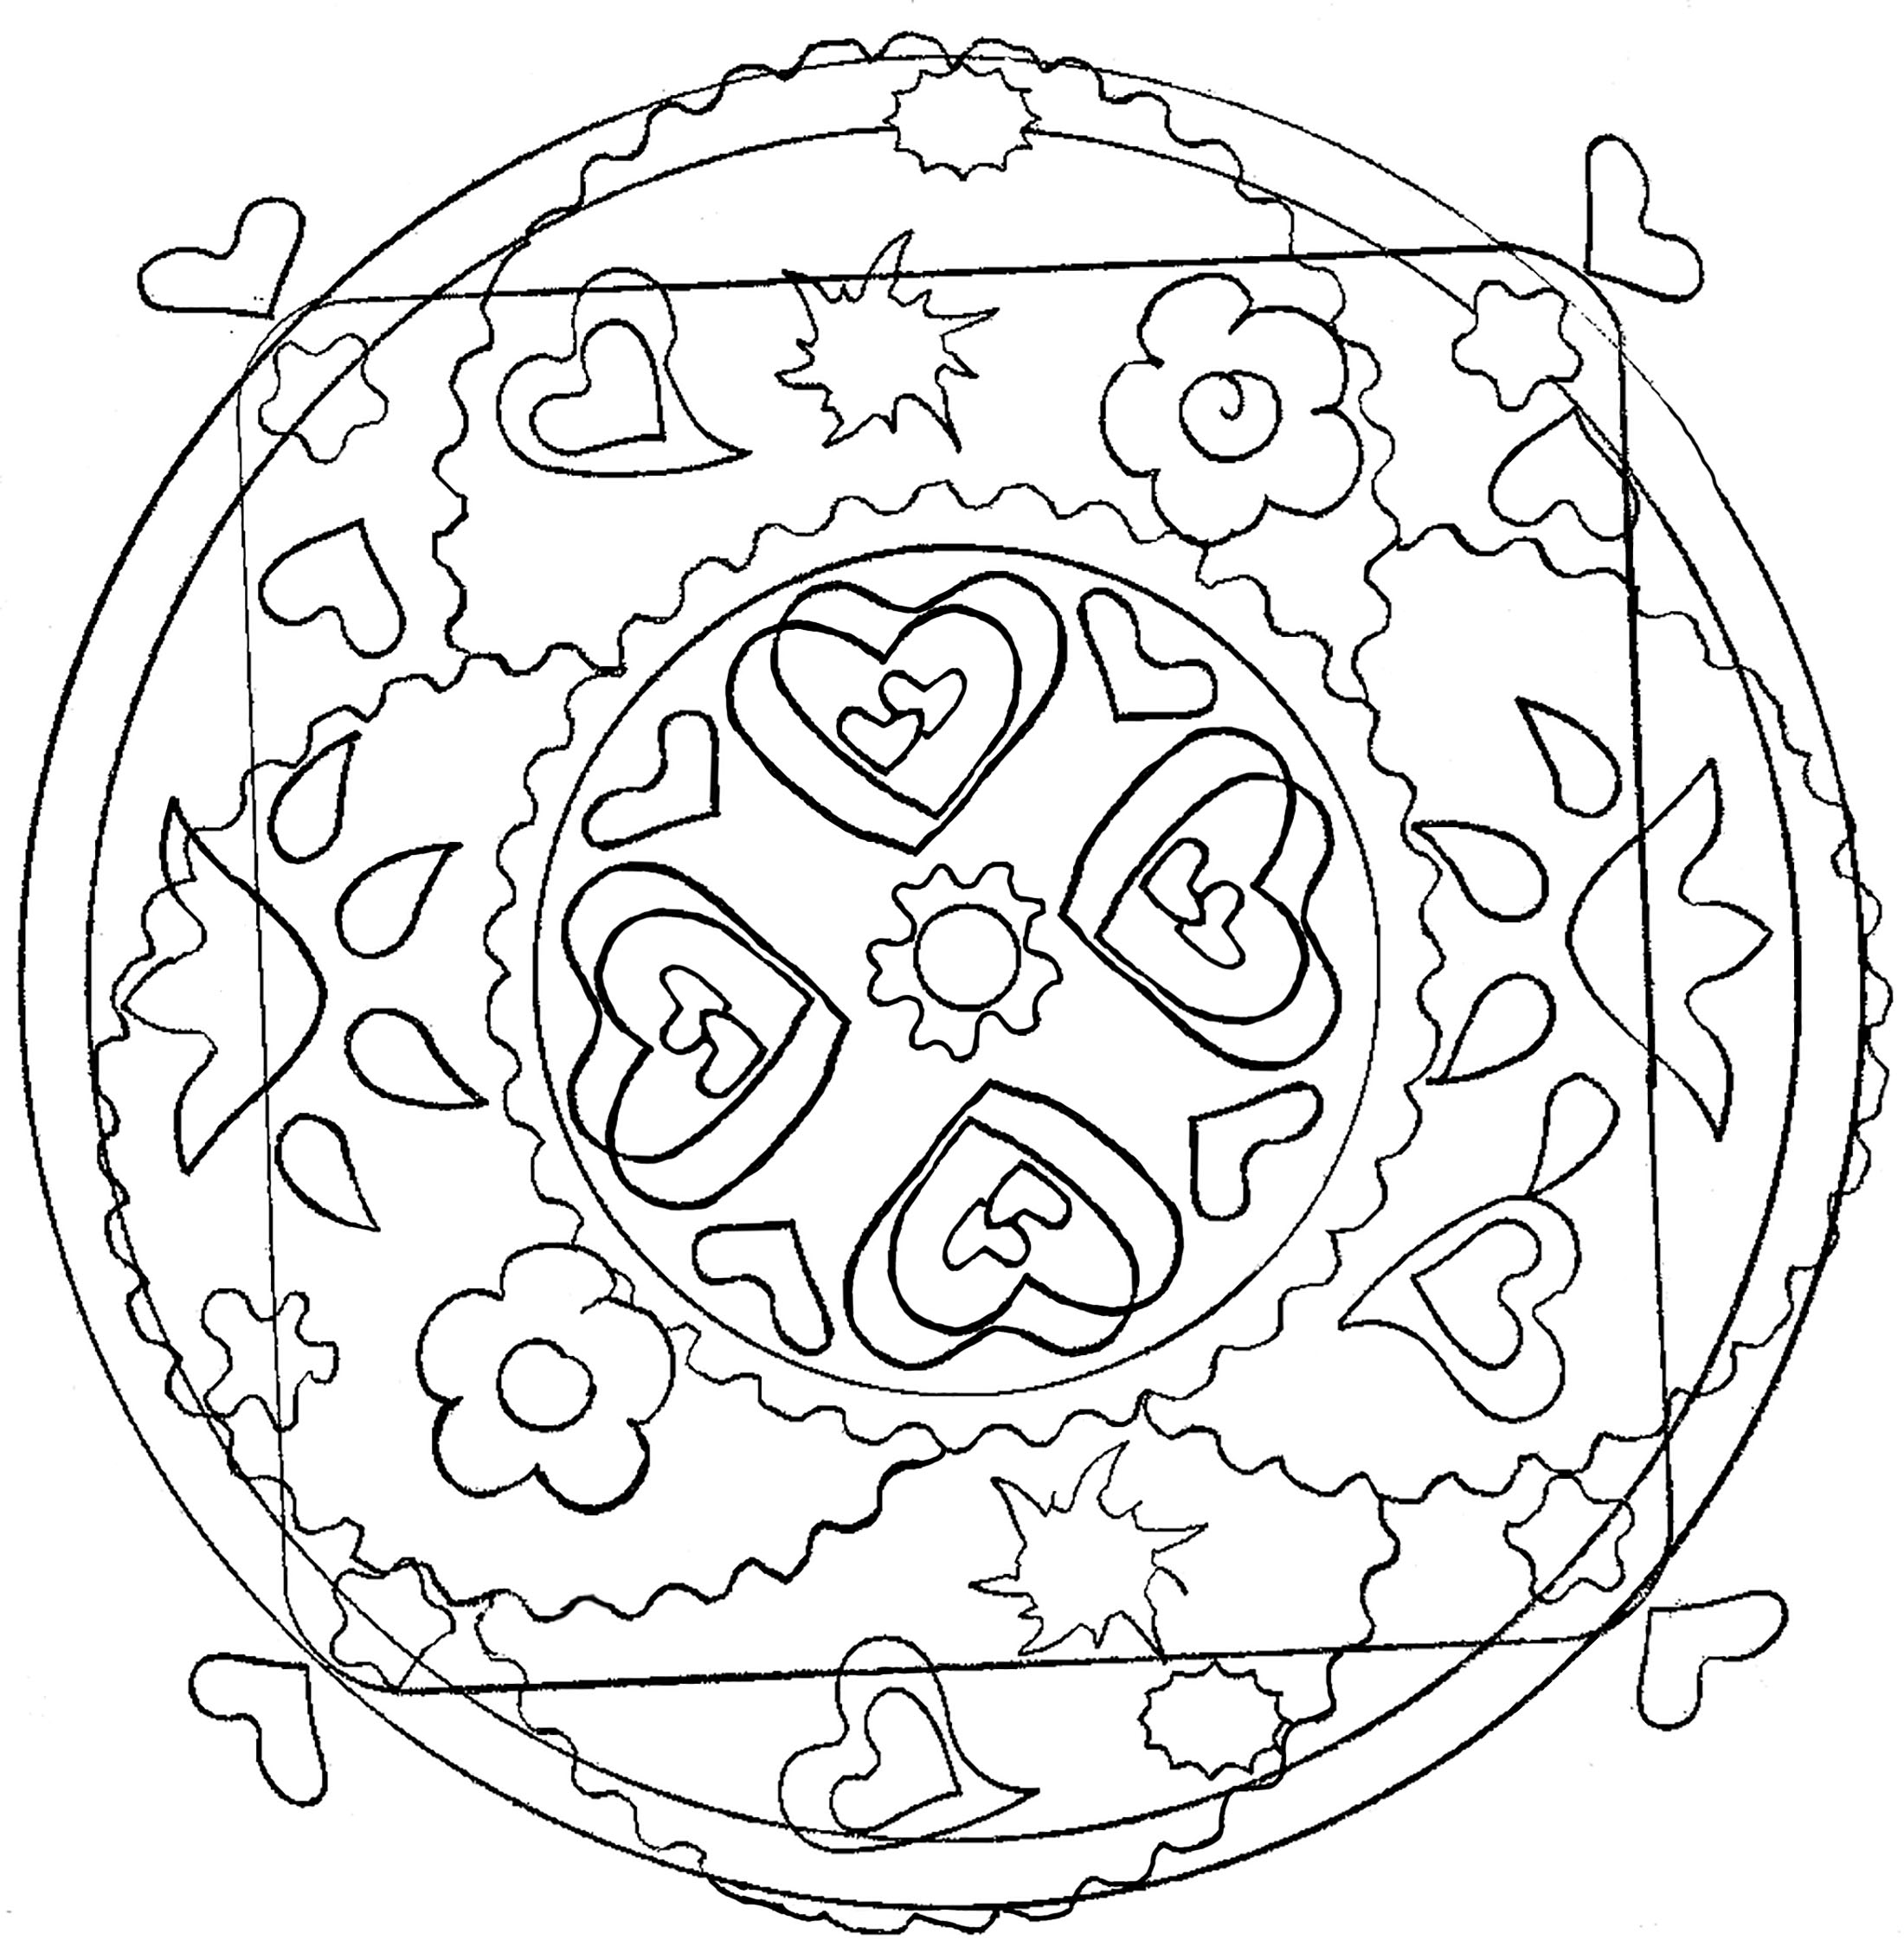 Ein Ausmalbild von Mandala für die Jüngsten, niedriger Schwierigkeitsgrad. Große Flächen, die leicht auszufüllen sind.